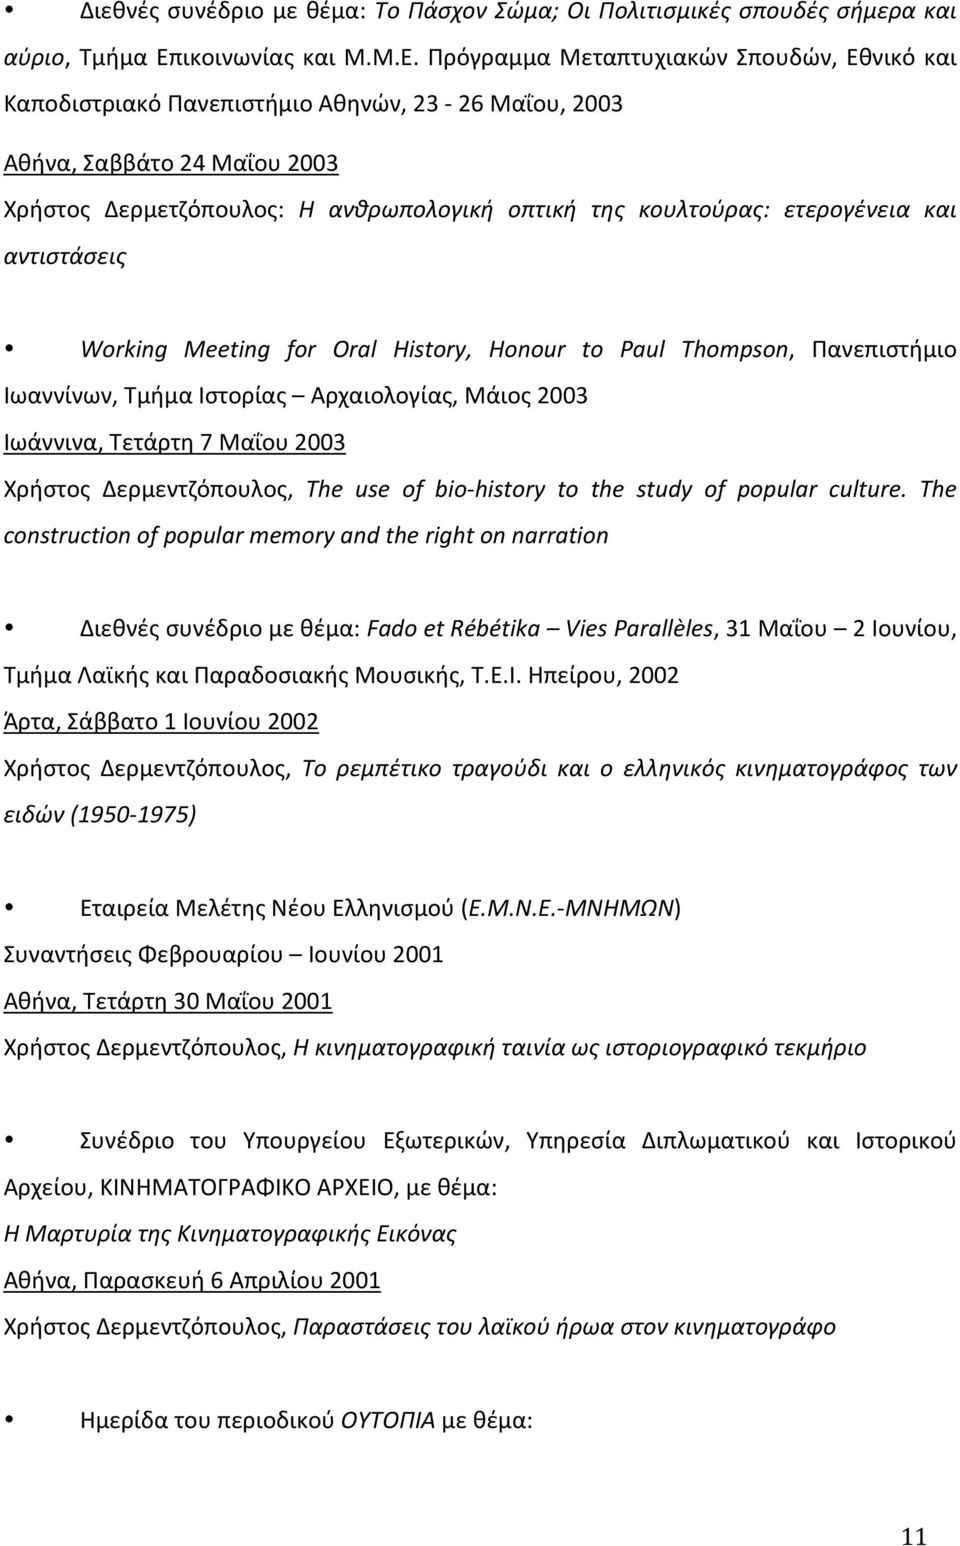 Πρόγραμμα Mεταπτυχιακών Σπουδών, Eθνικό και Kαποδιστριακό Πανεπιστήμιο Aθηνών, 23-26 Mαΐου, 2003 Aθήνα, Σαββάτο 24 Μαΐου 2003 Χρήστος Δερμετζόπουλος: Η ανθρωπολογική οπτική της κουλτούρας: